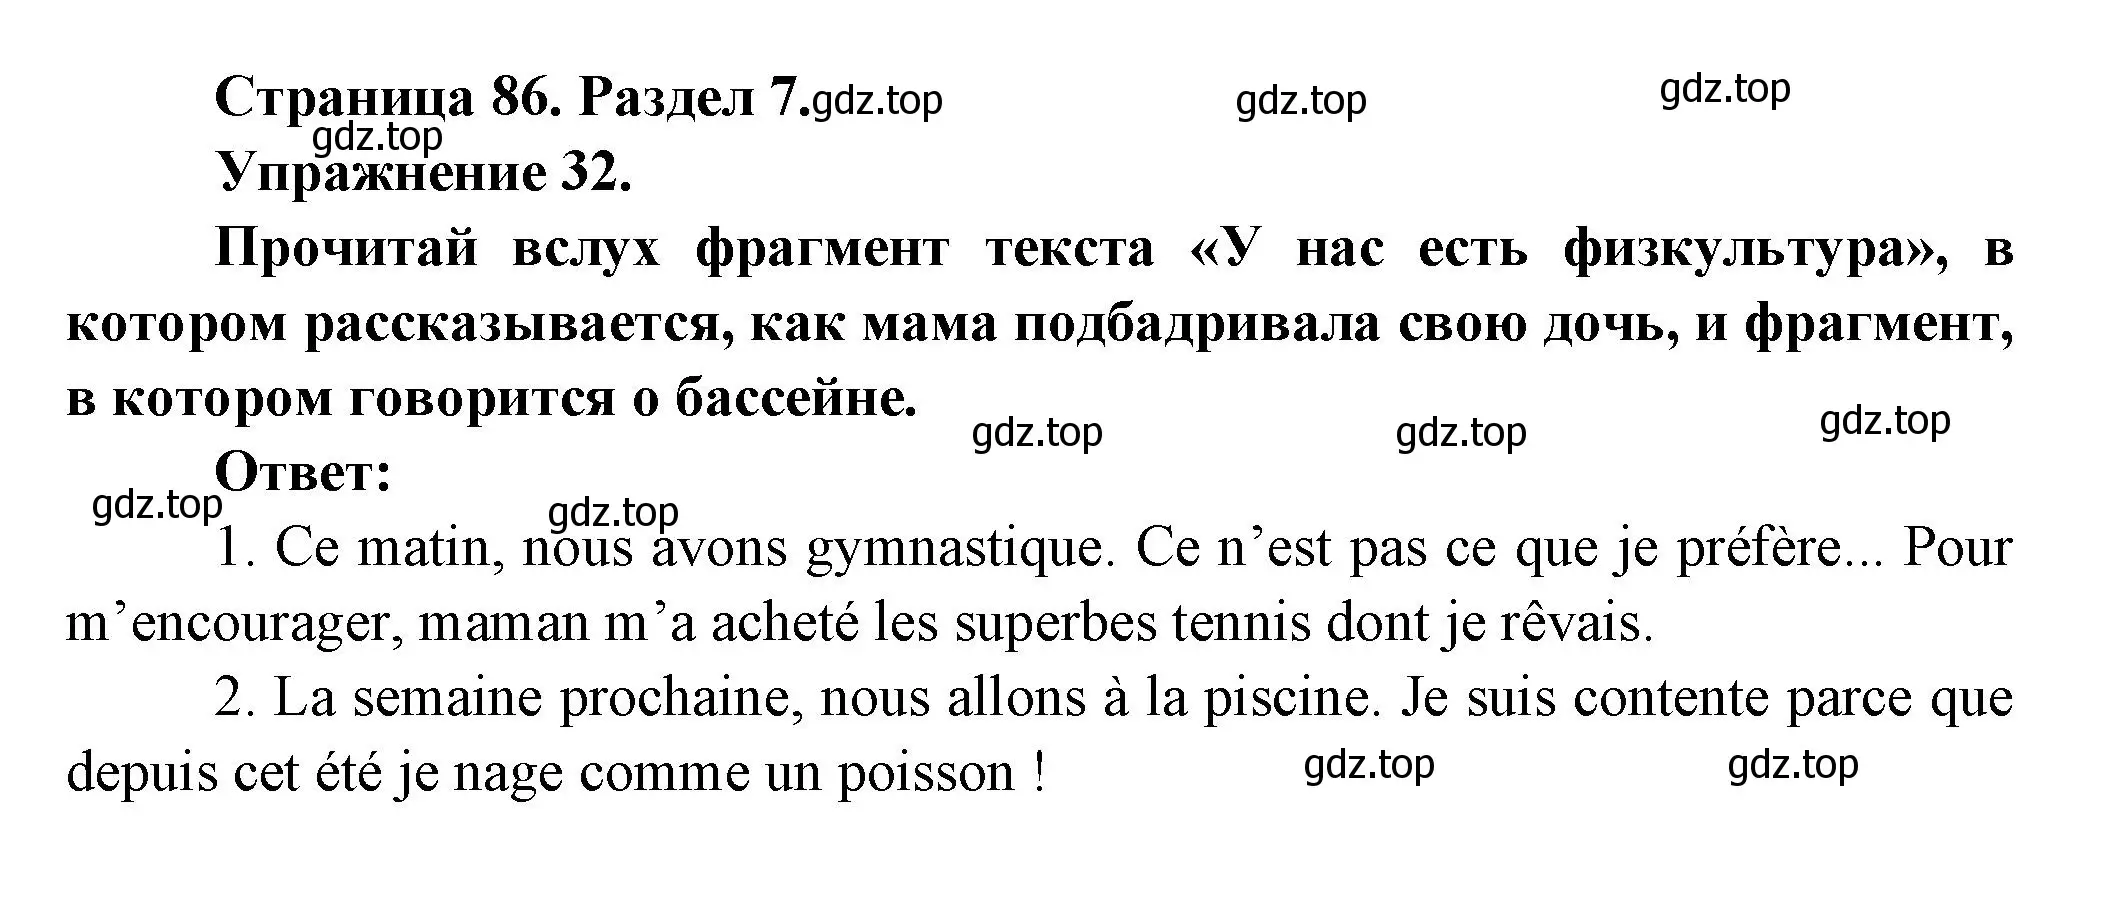 Решение номер 32 (страница 86) гдз по французскому языку 5 класс Береговская, Белосельская, учебник 2 часть